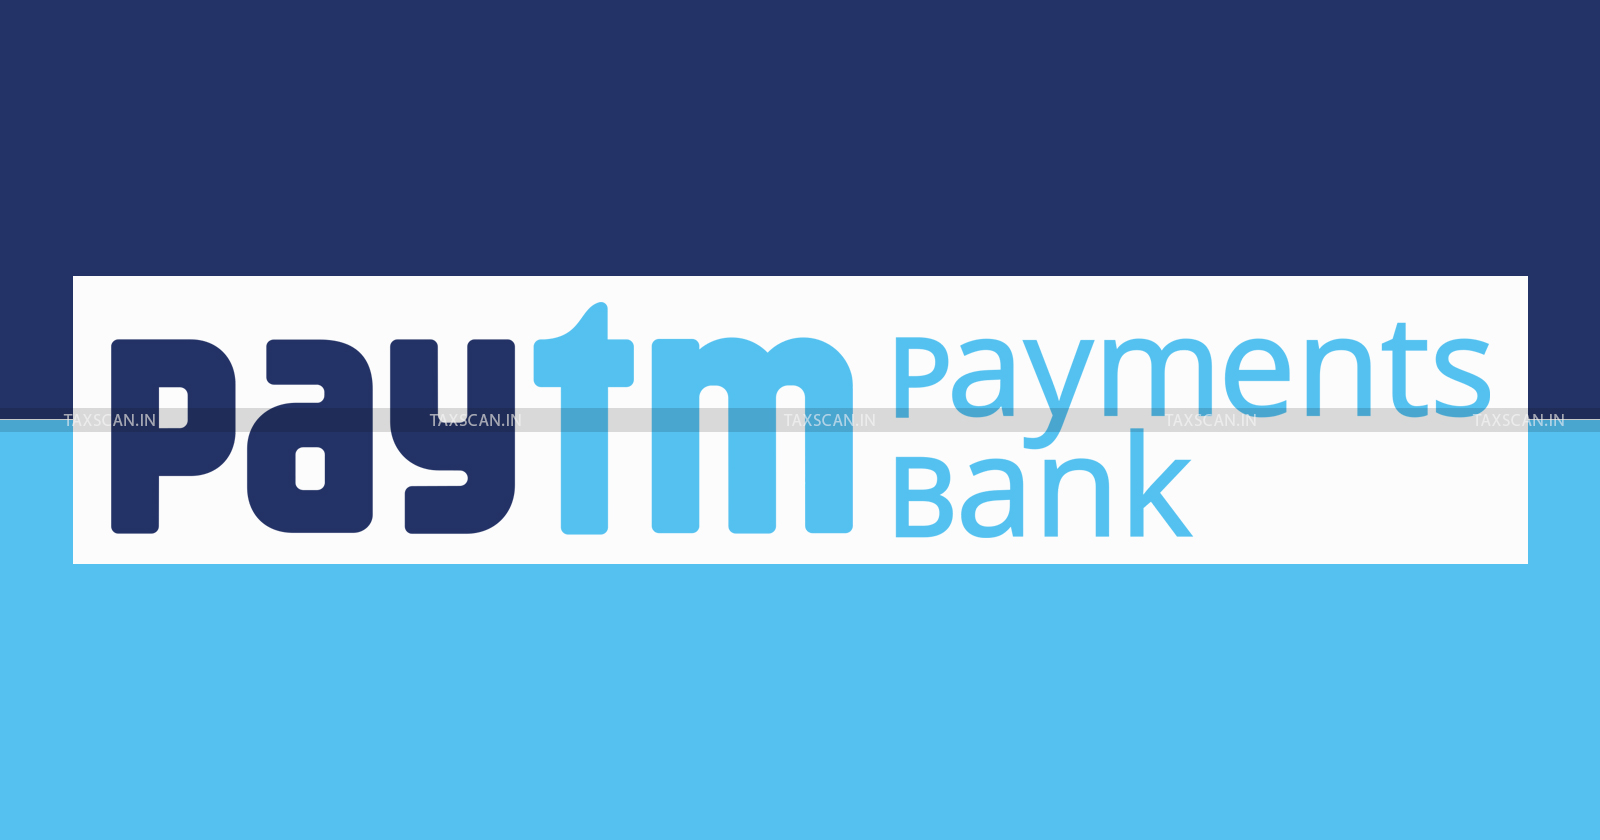 Paytm Ban Supervisory - Detrimental - FinTech Ecosystem - RBI - taxscan